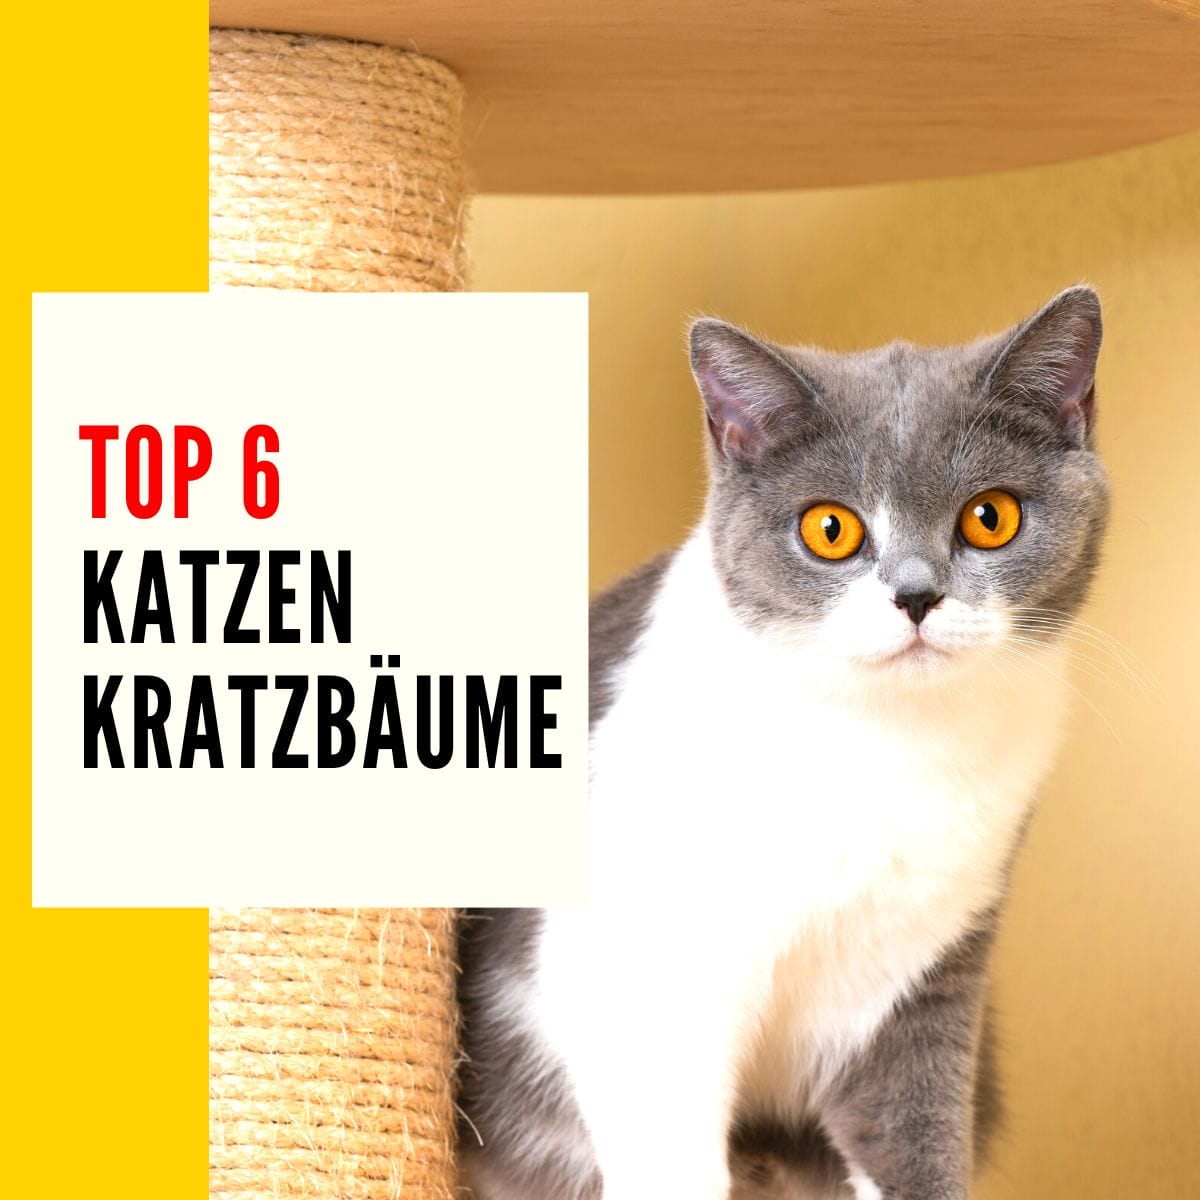 Kratzbaum Katze: Dieser Beitrag geht über die besten Katzen Kratzbäume für Katzenbesitzer.